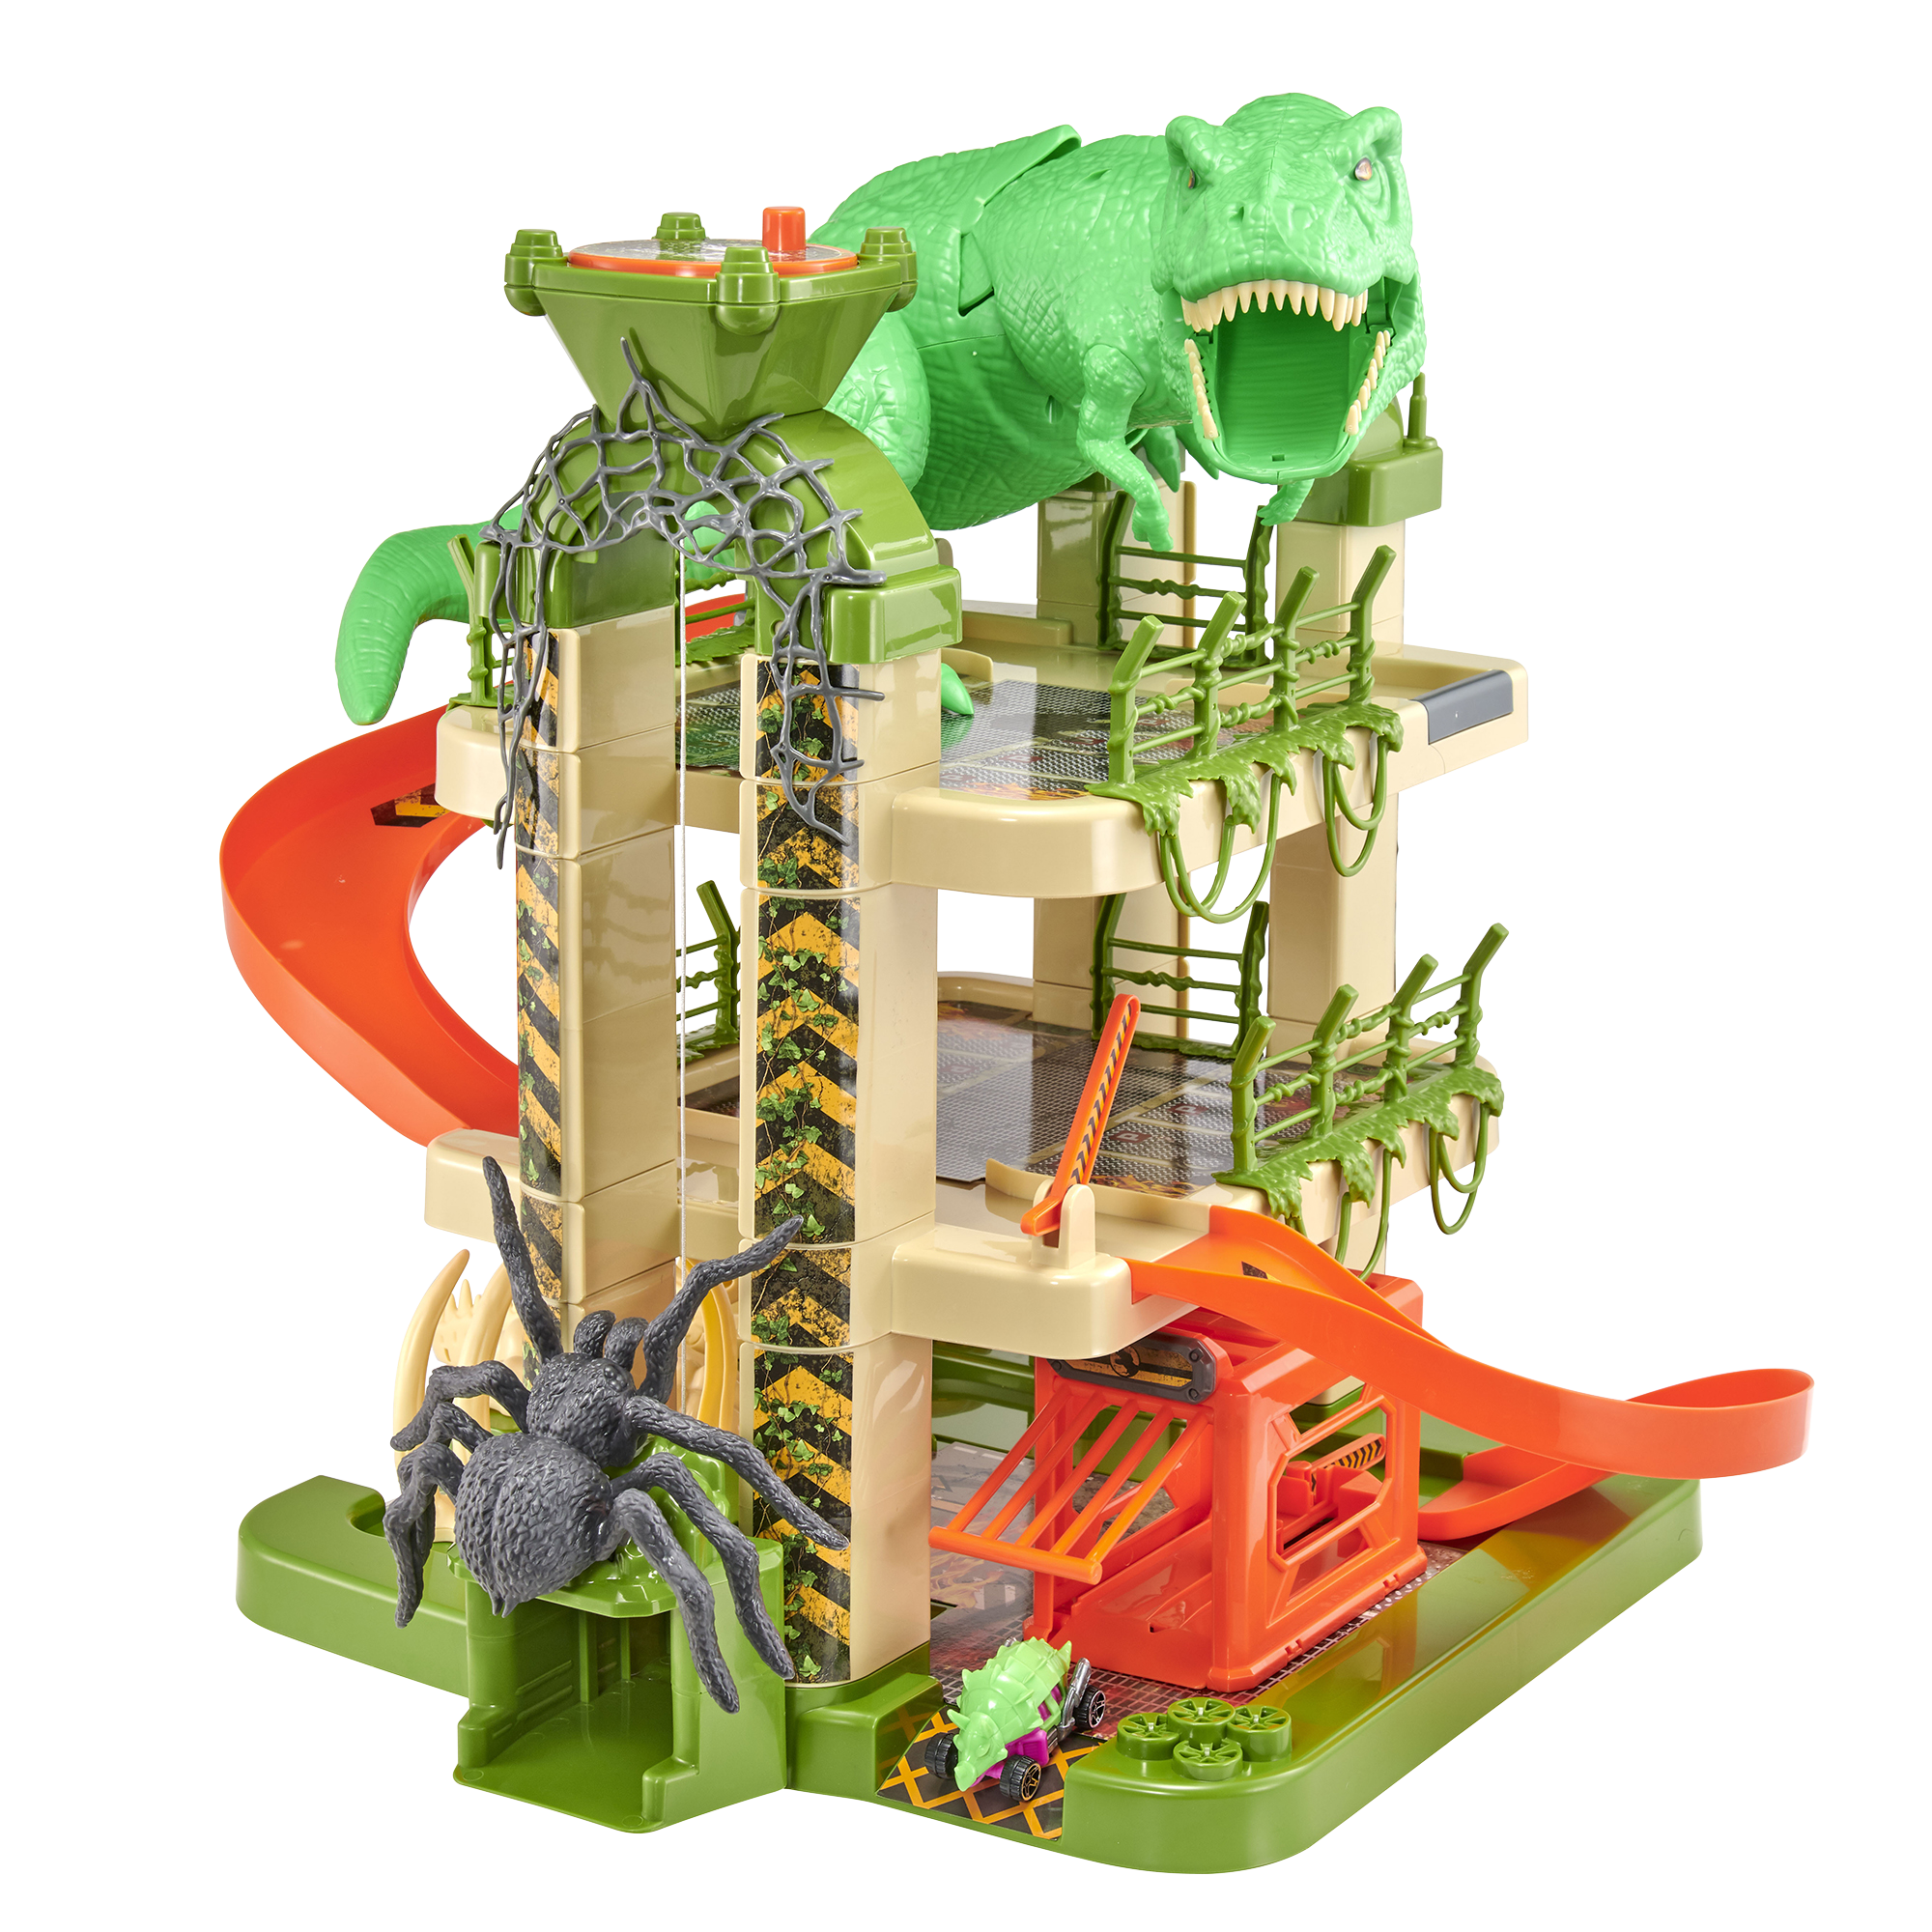 Garage giocattolo motor & co a 3 livelli con 3 auto monster machines - incluso ragno gigante e tyrannosauro - altezza 52 cm - include 3 mini auto monster machines, perfetto per avventure dinamiche! - SUPERSTAR